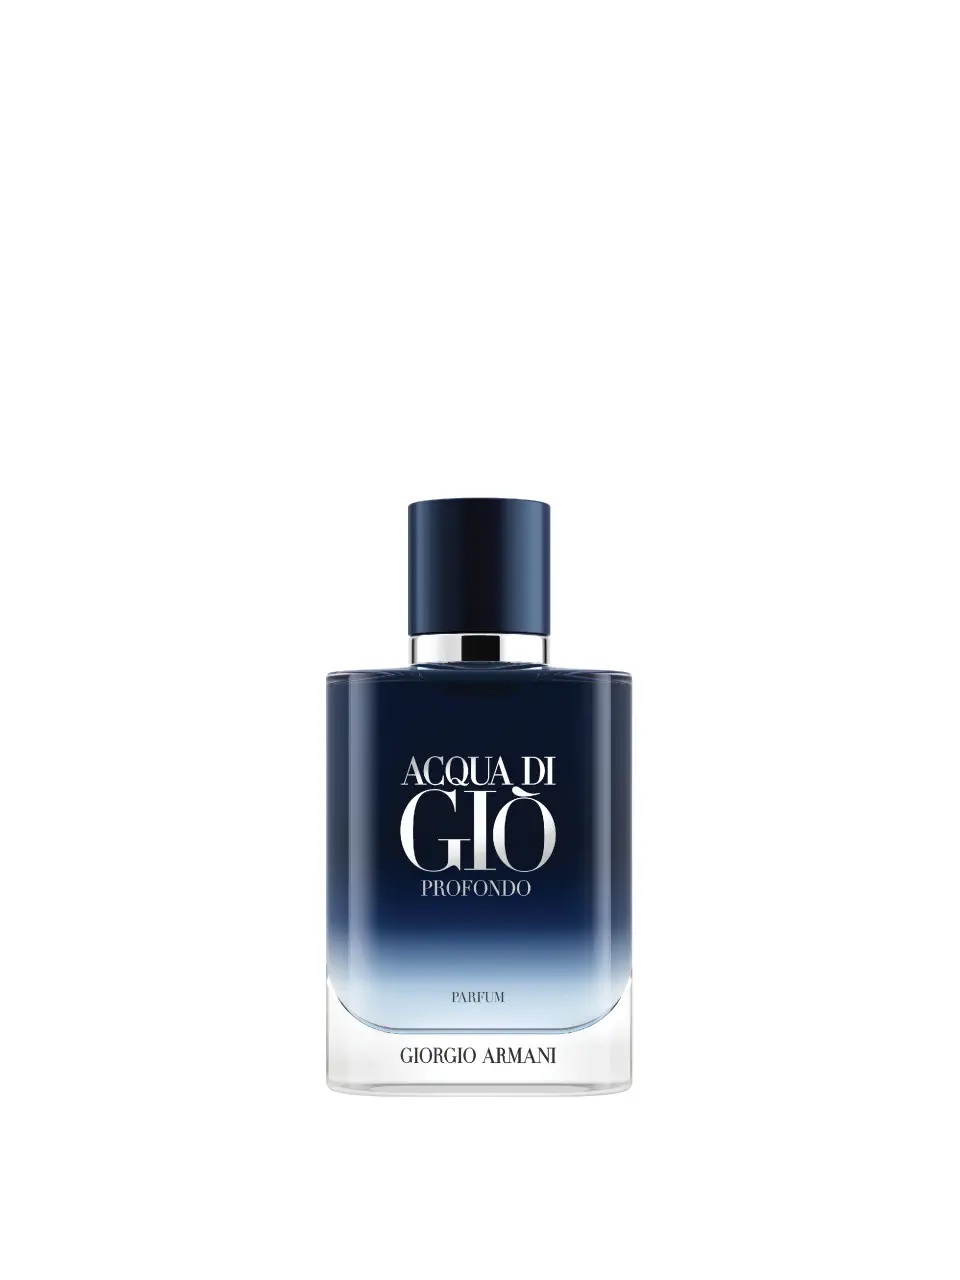 Giorgio Armani Acqua di Giò pour Homme Profondo Parfum 50 ml